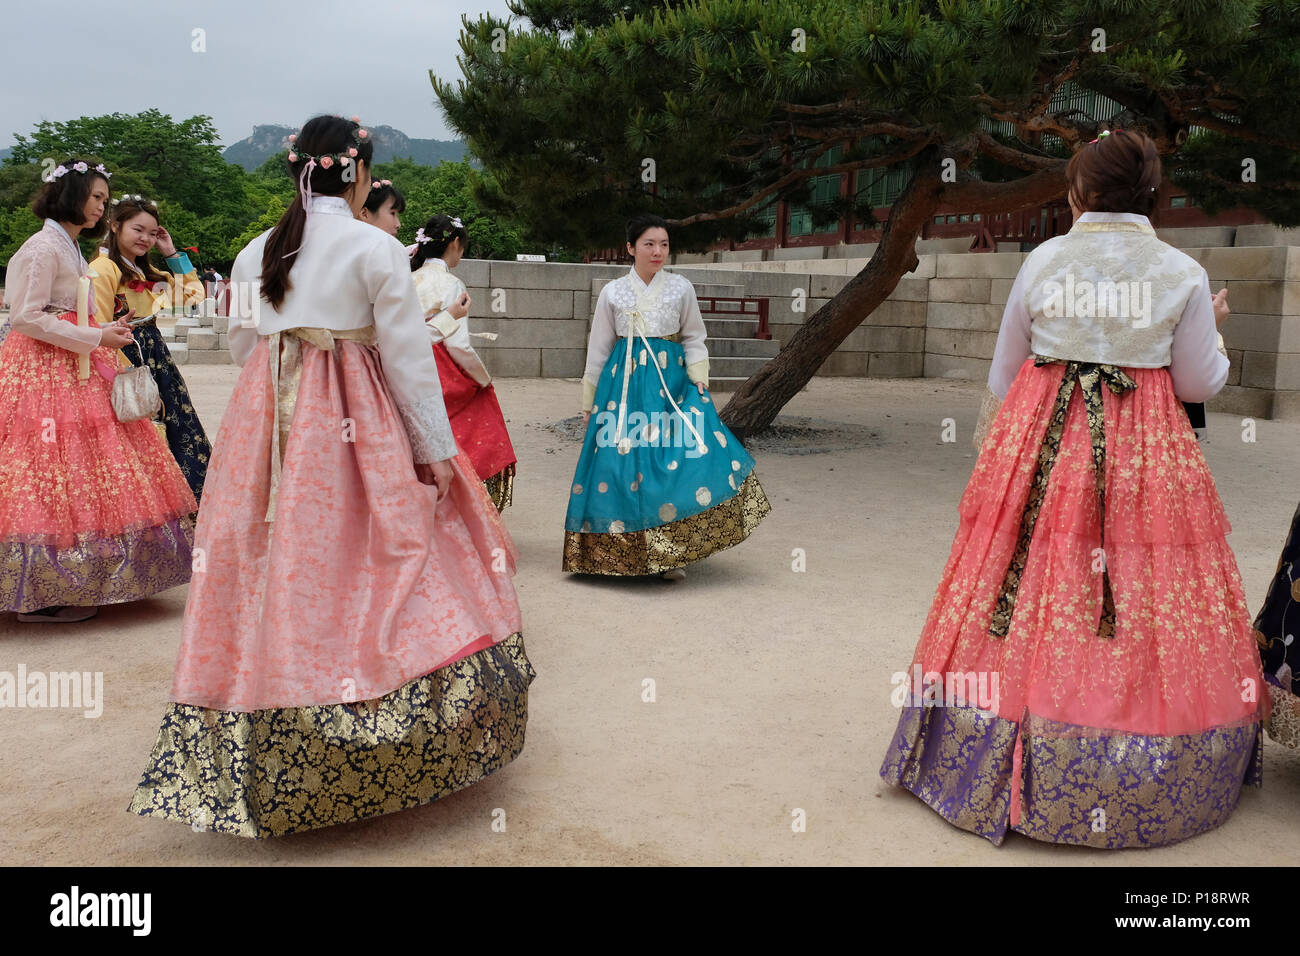 Visiteurs en costumes traditionnels à Gyeongbokgung ou le Palais de Gyeongbok qui était le principal palais royal de la dynastie Joseon. Construit en 1395 dans la ville de Séoul, capitale de la Corée du Sud Banque D'Images